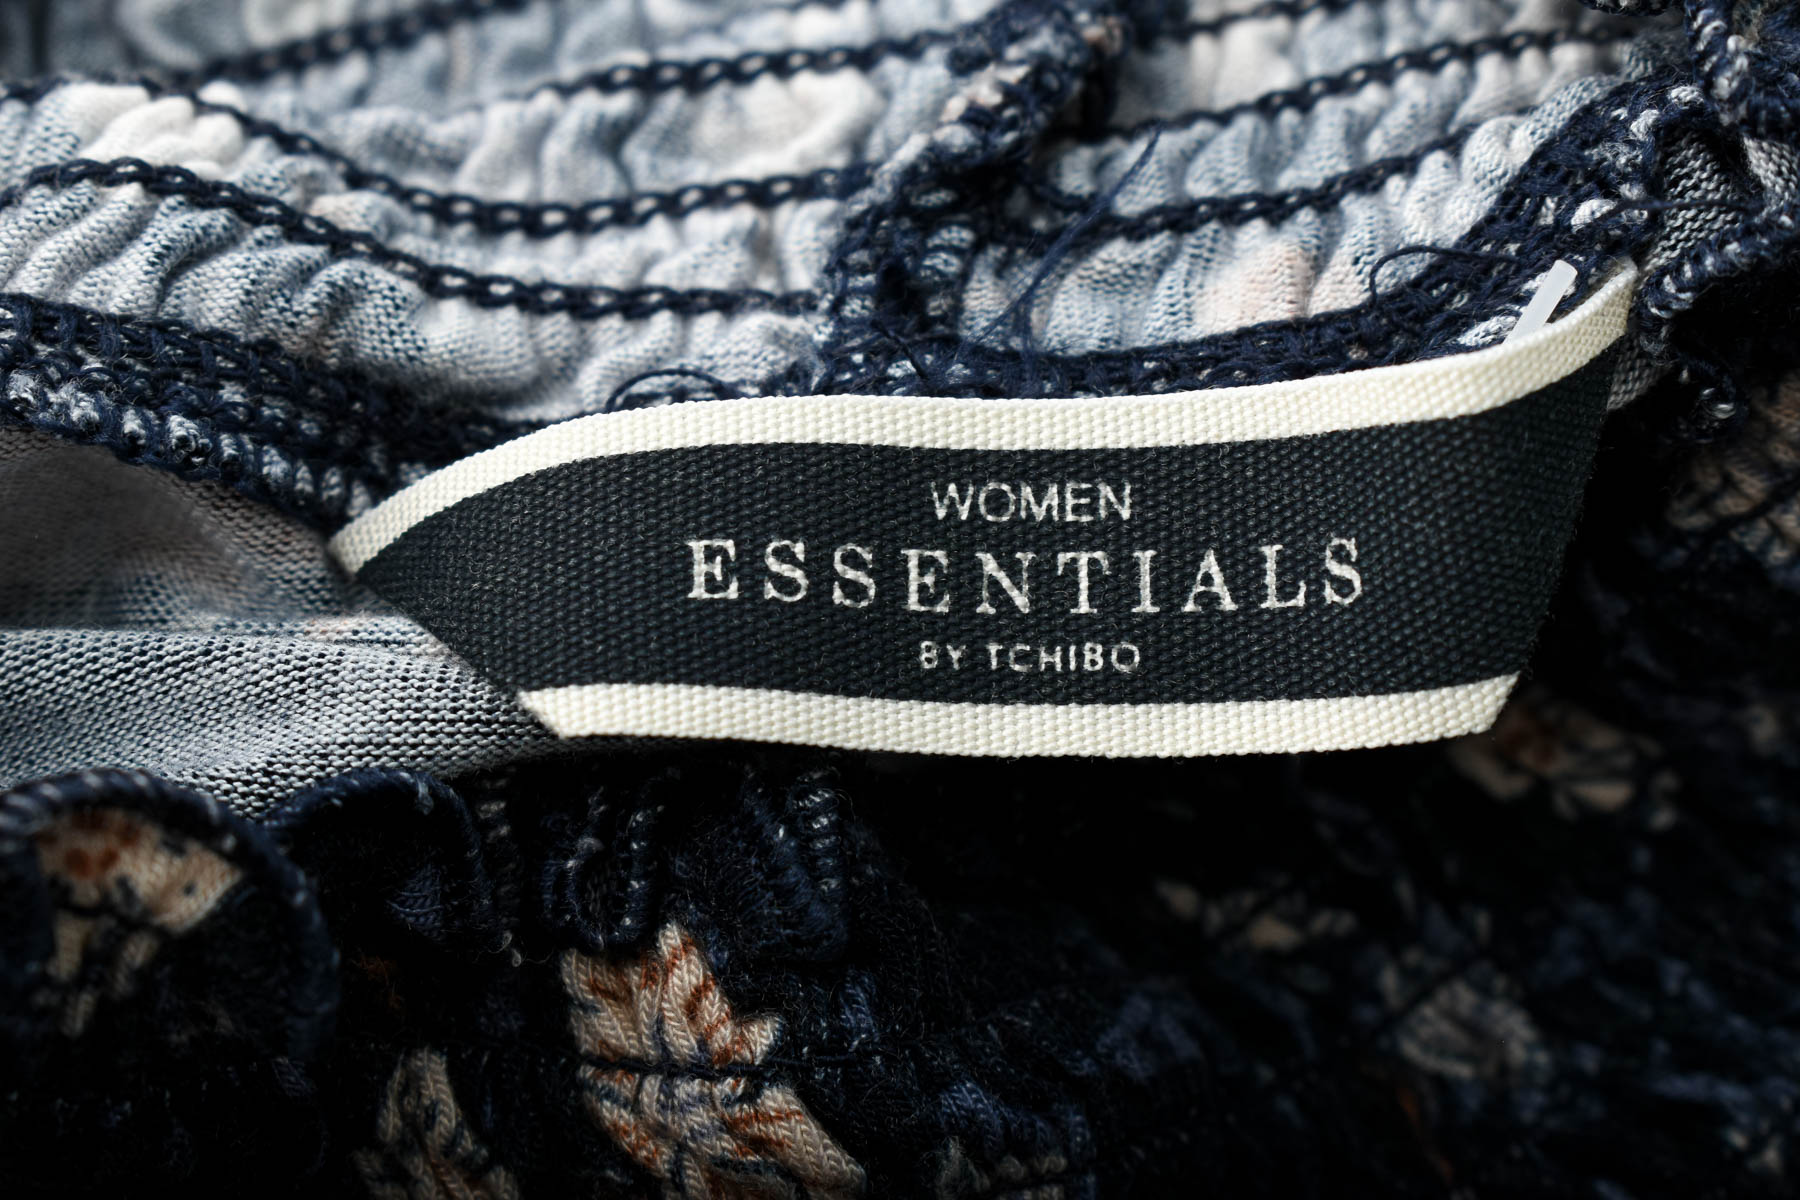 Bluza de damă - WOMEN essentials by Tchibo - 2